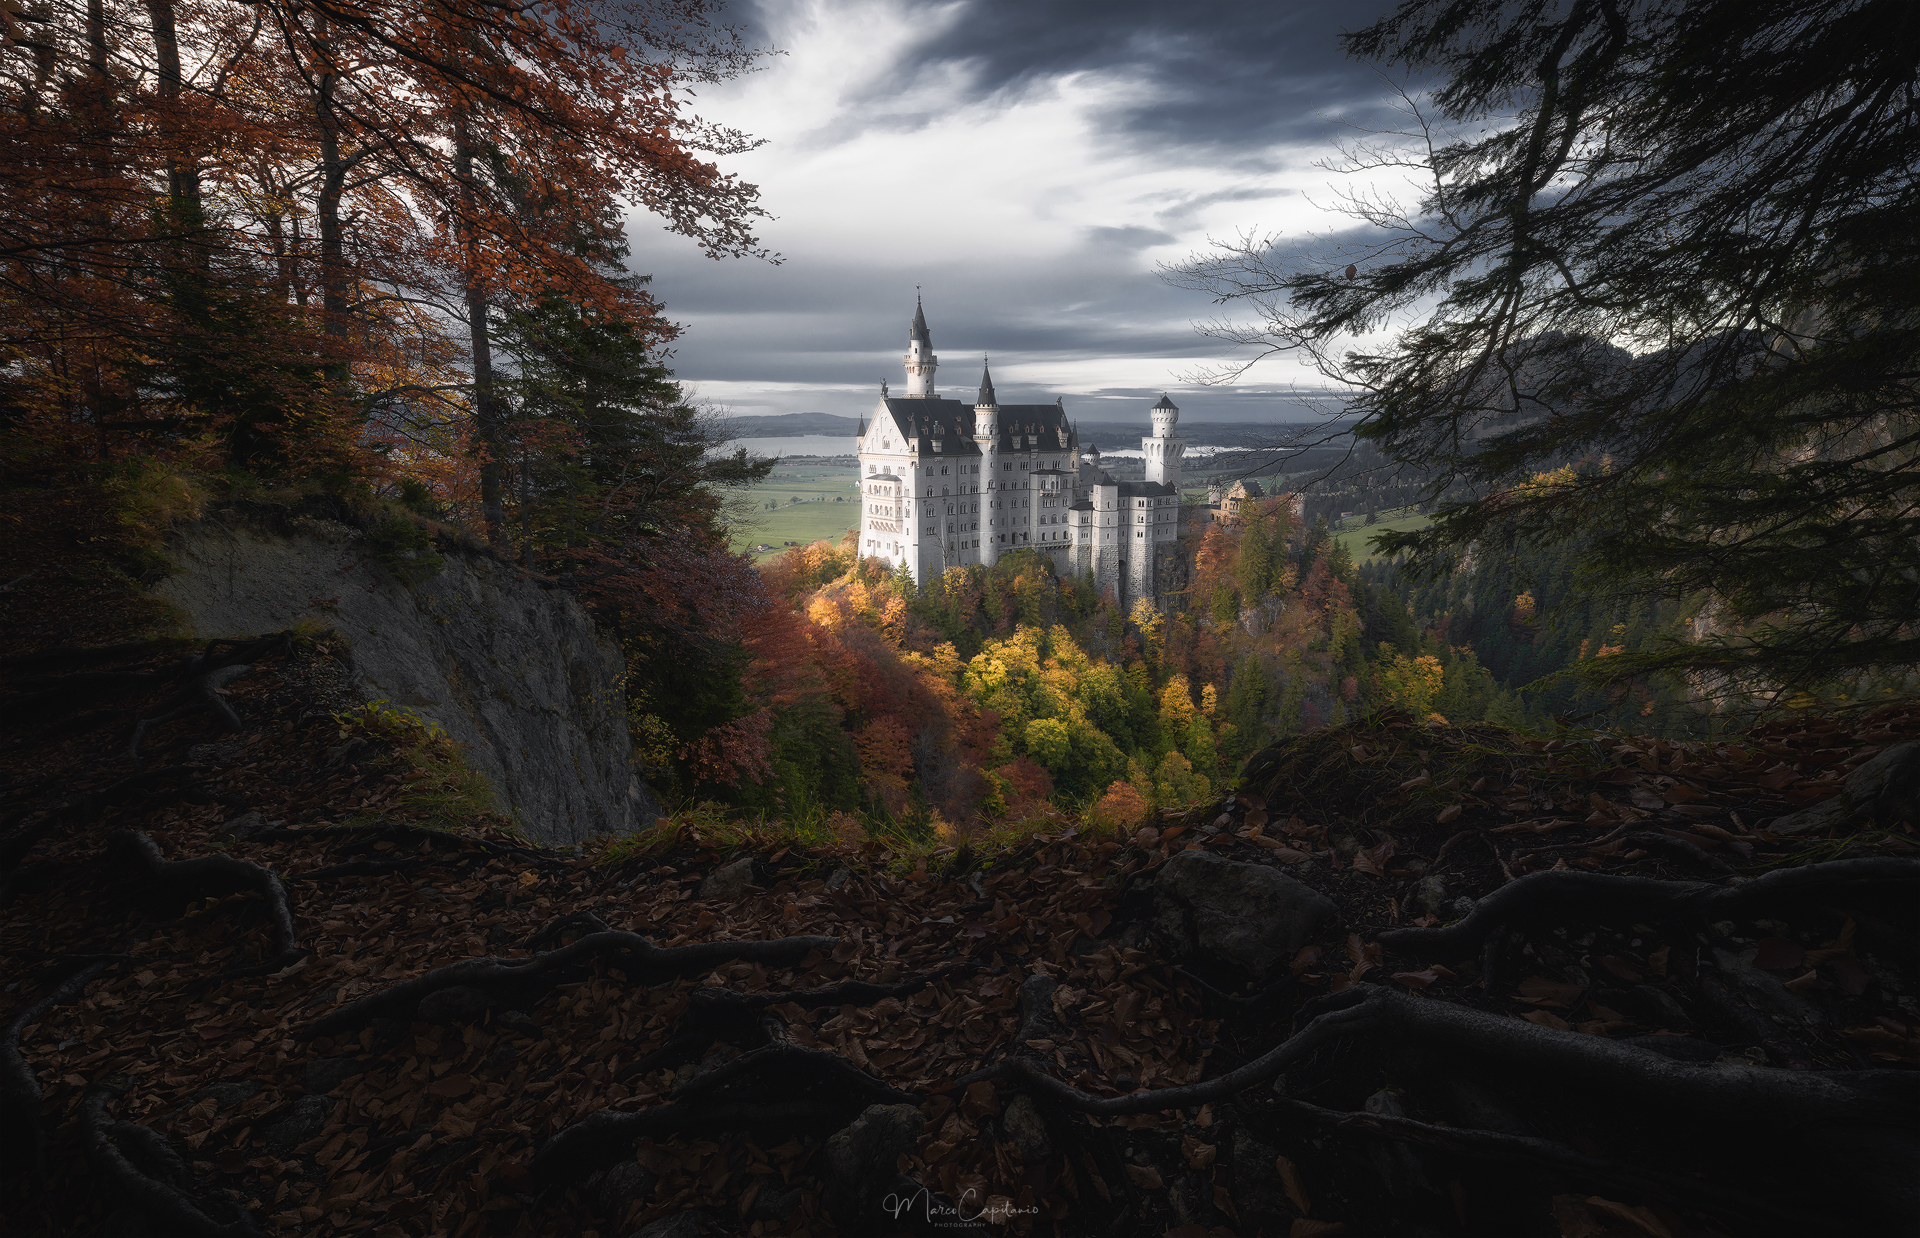 The Fairytale Castle ...